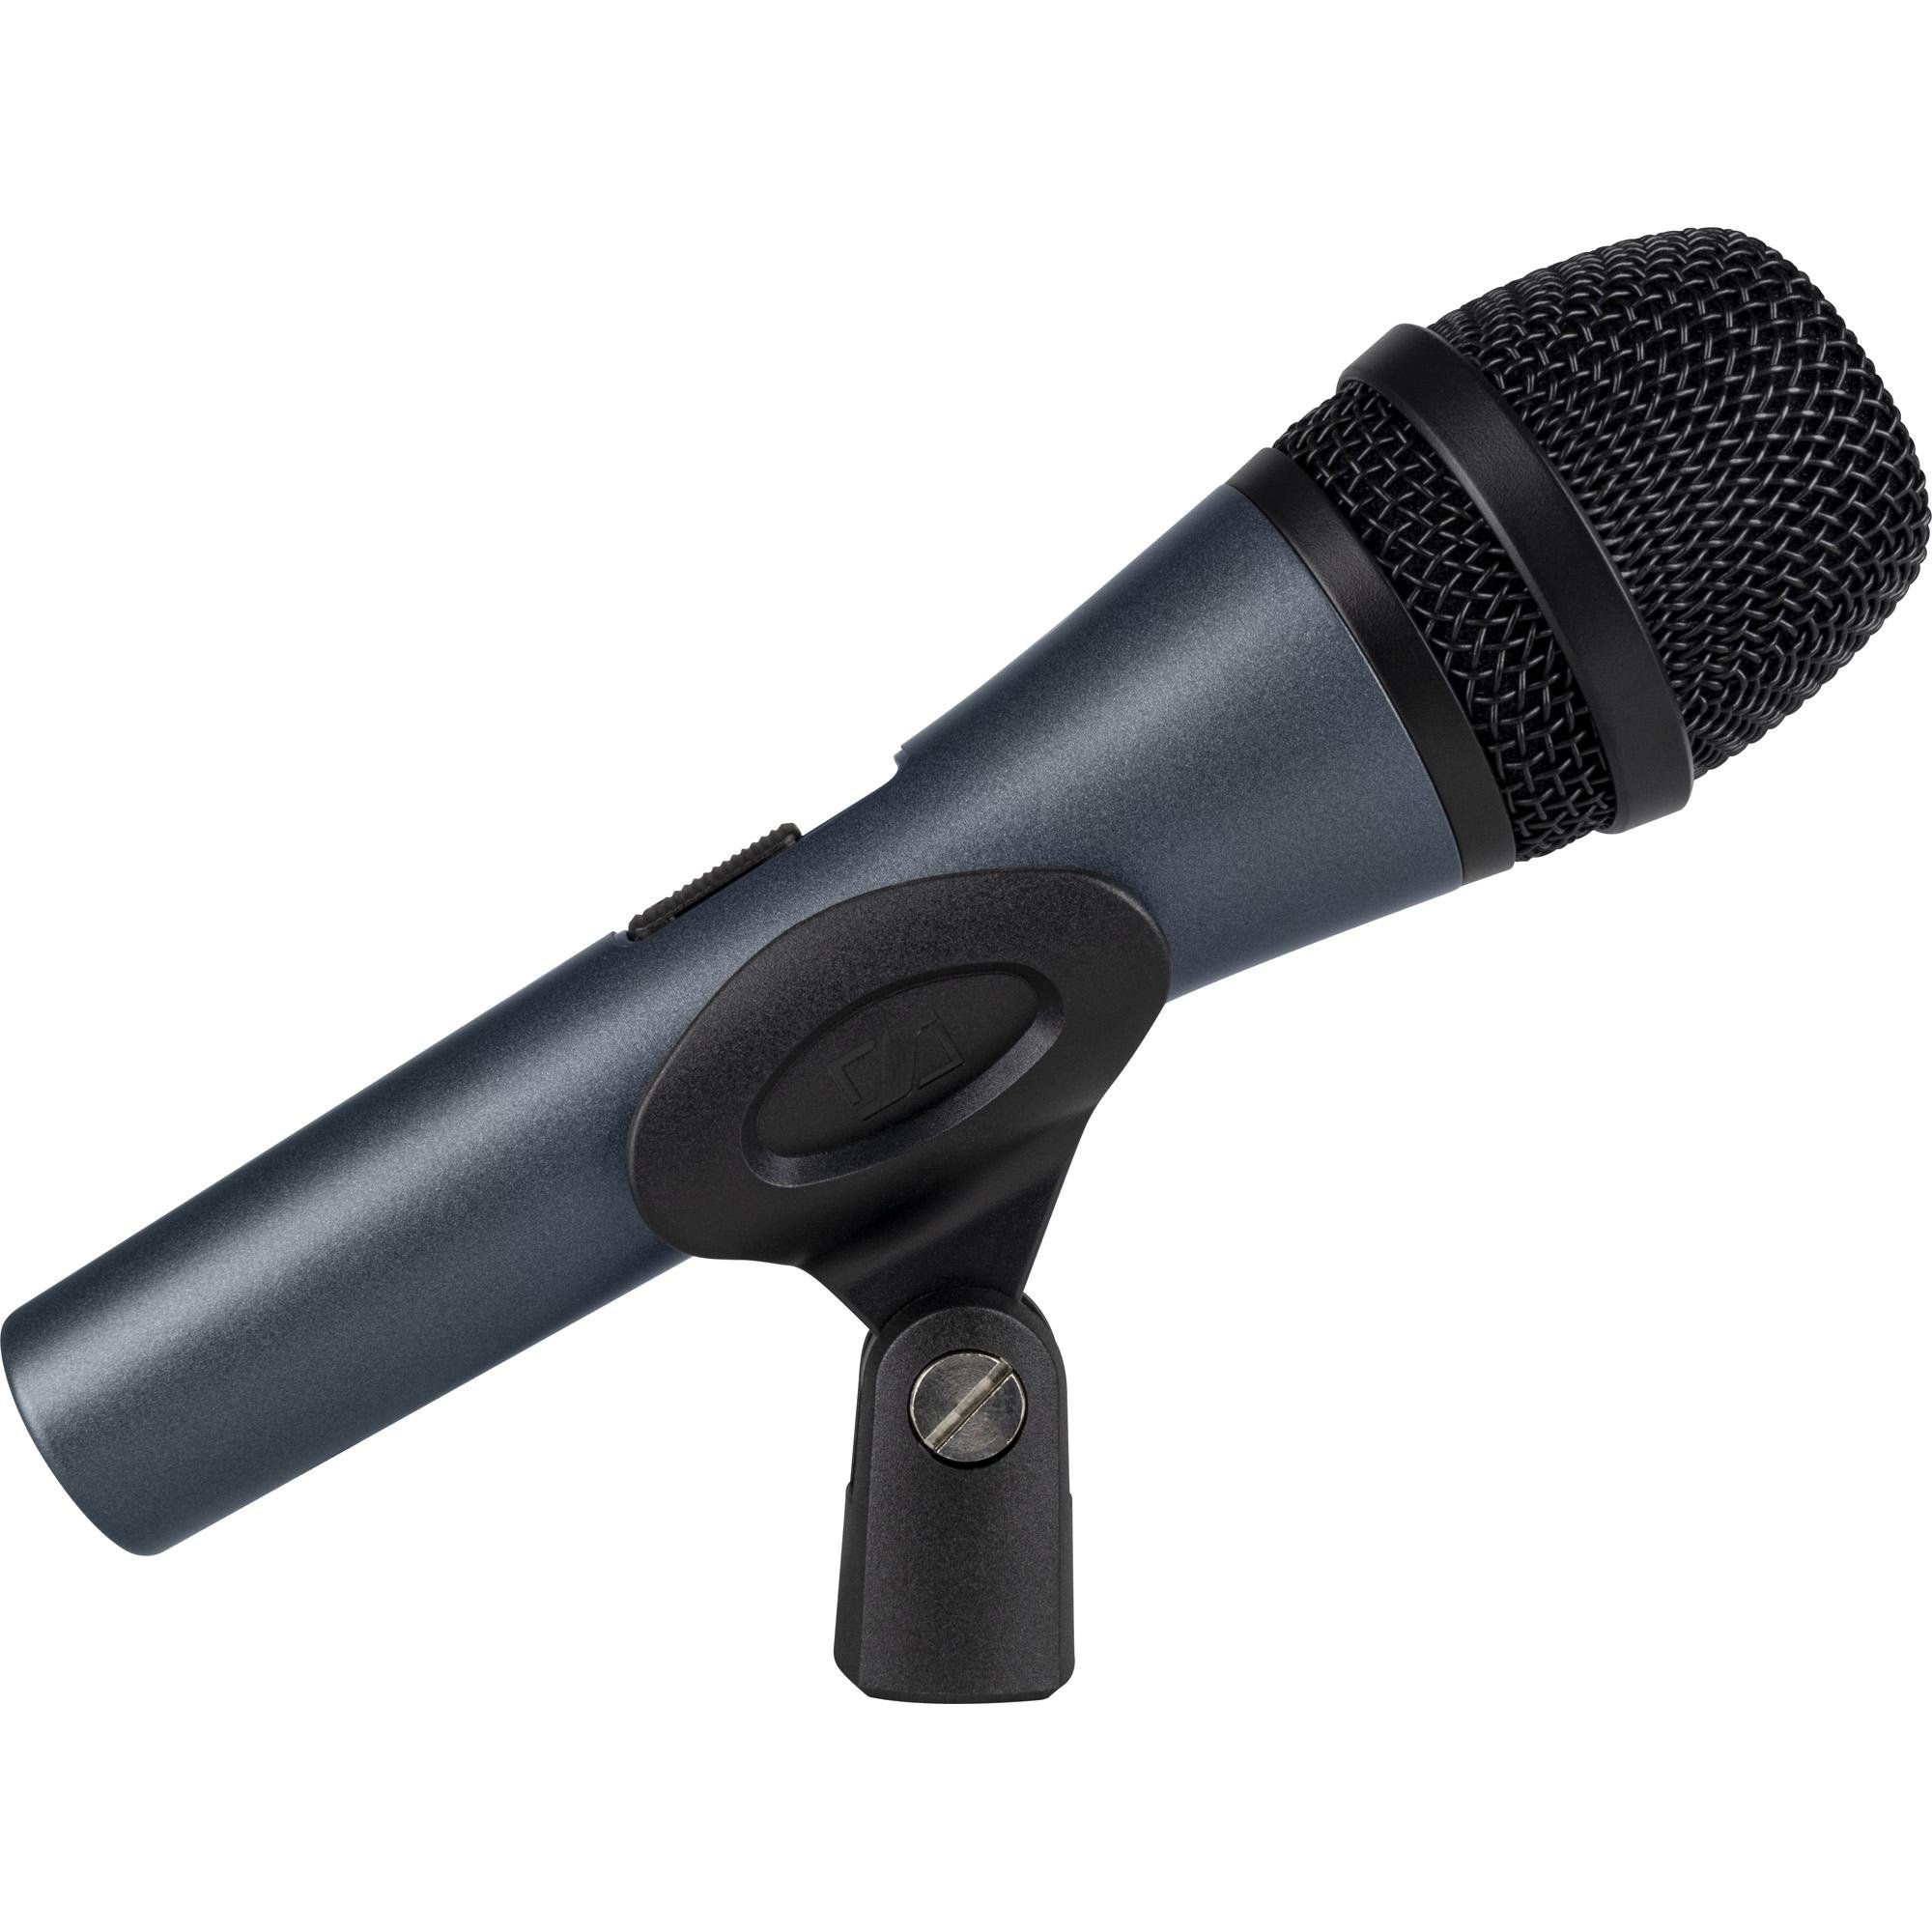 Microfone Dinâmico Cardióide E835-S SENNHEISER